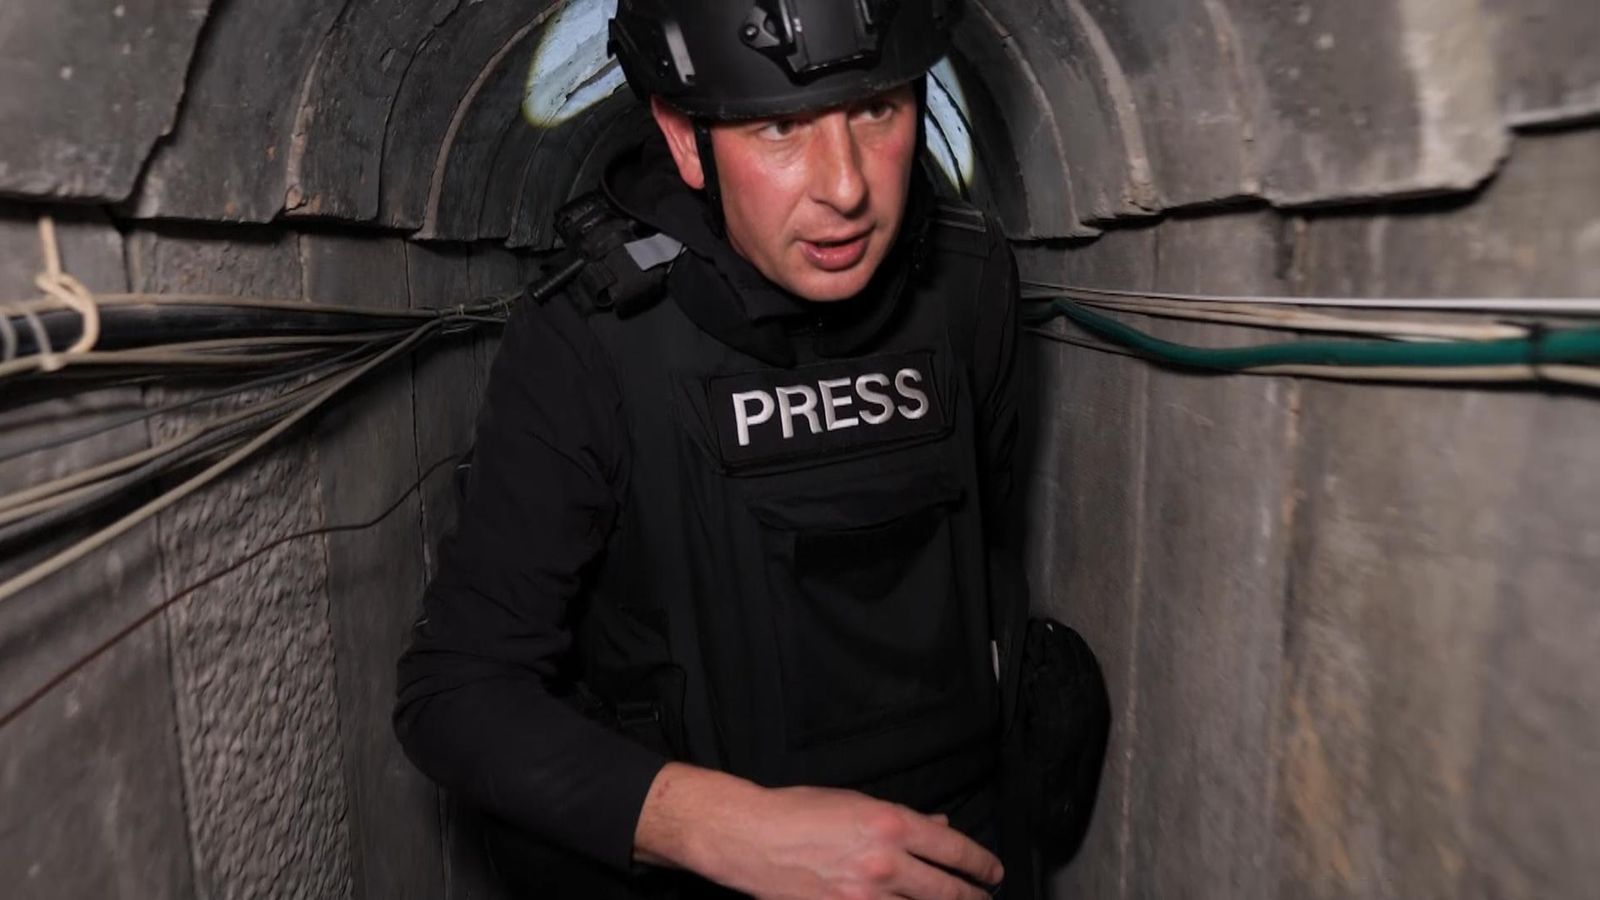 Вътре в мрежа от тунели в Газа израелските войски казват, че са открили клетка на Хамас, използвана за задържане на заложници